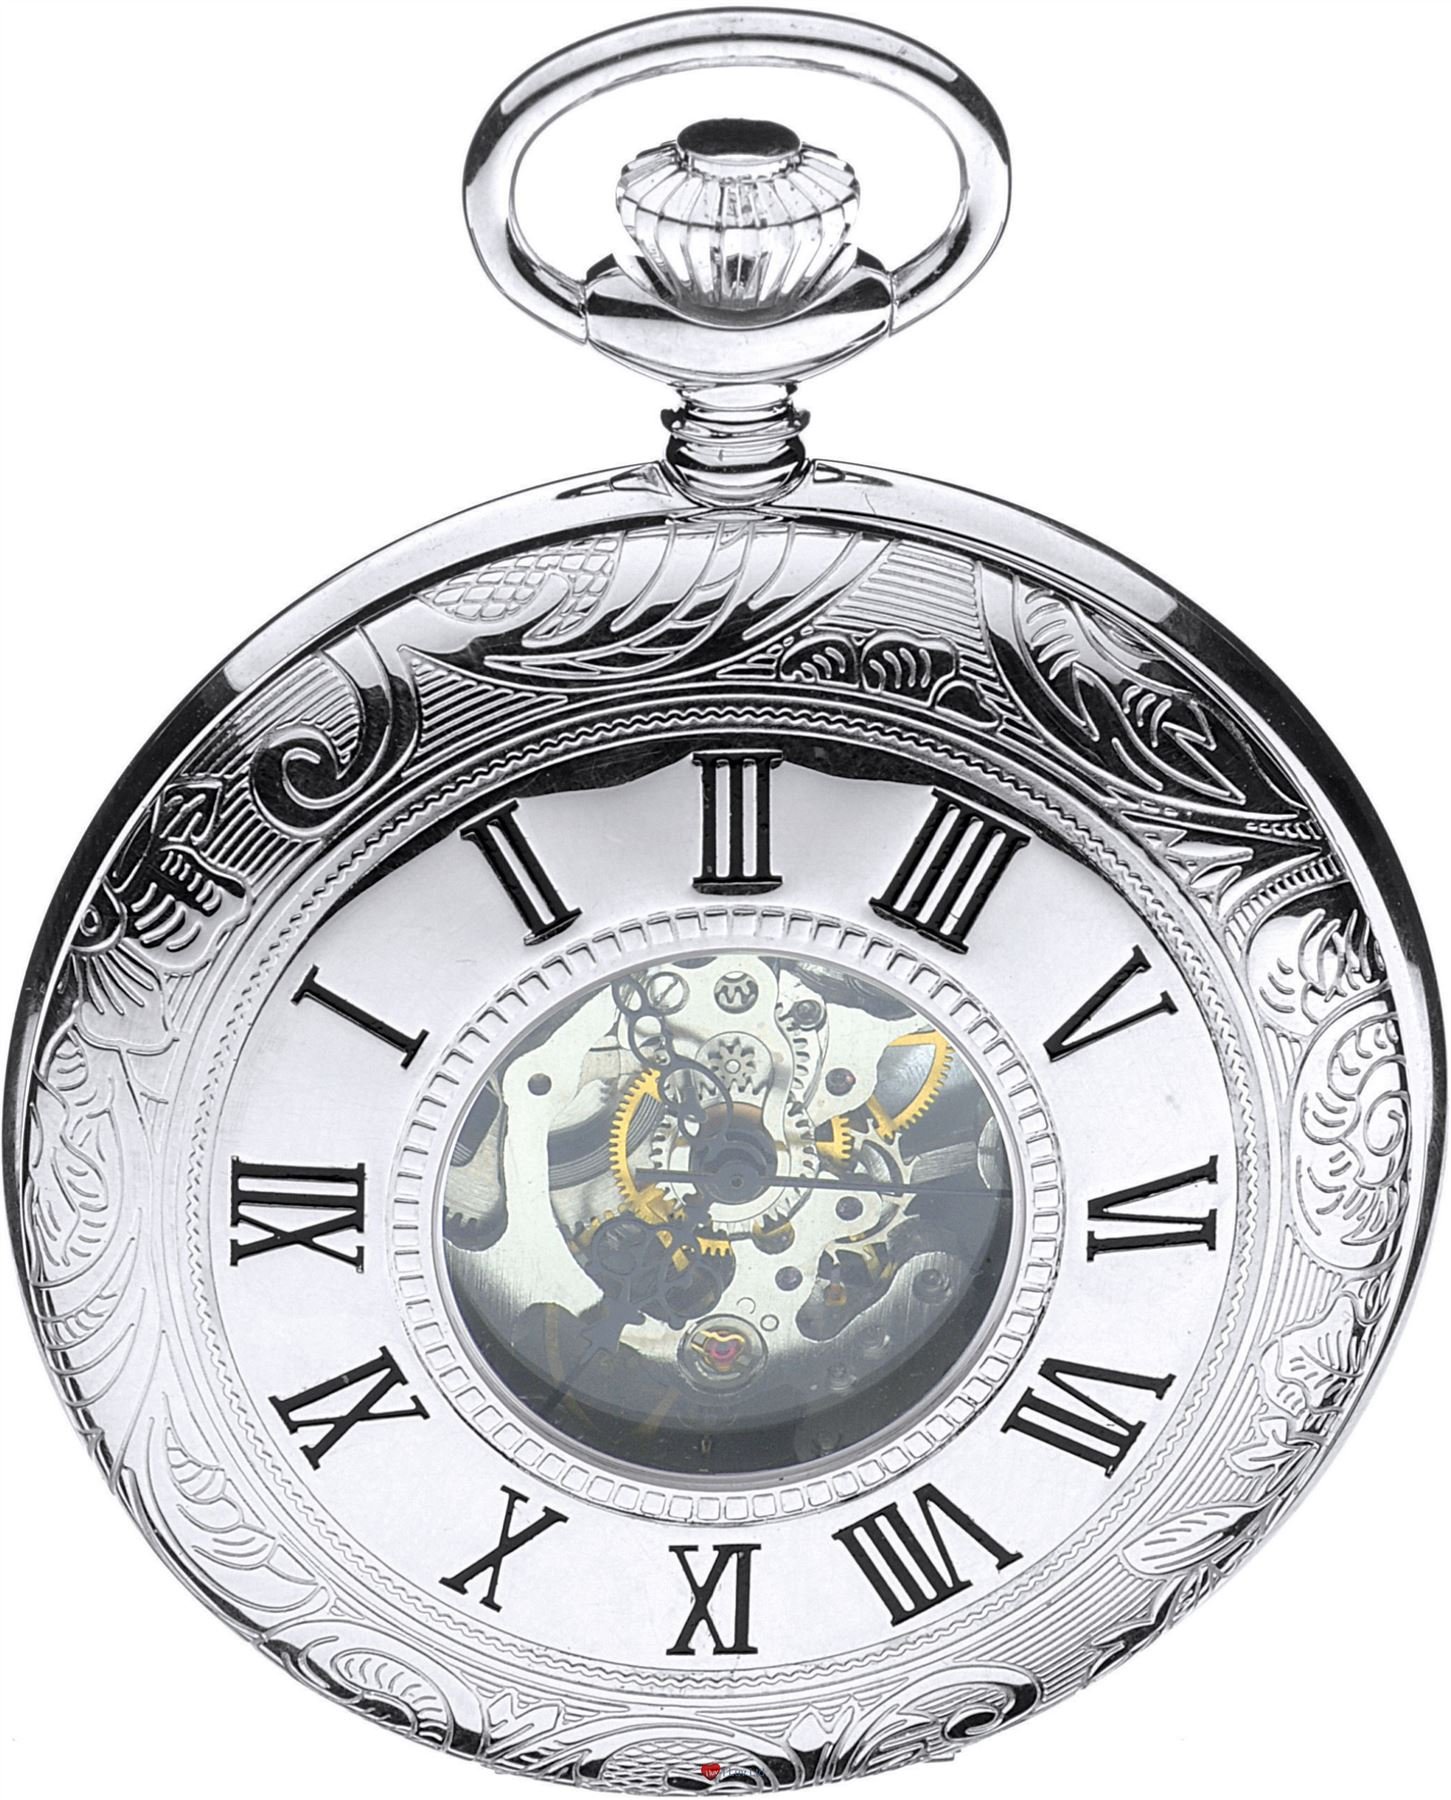 I LUV LTD Half Hunter Pocket Watch Sterling Silver Skeleton 17 Jewel Mechanical Movement